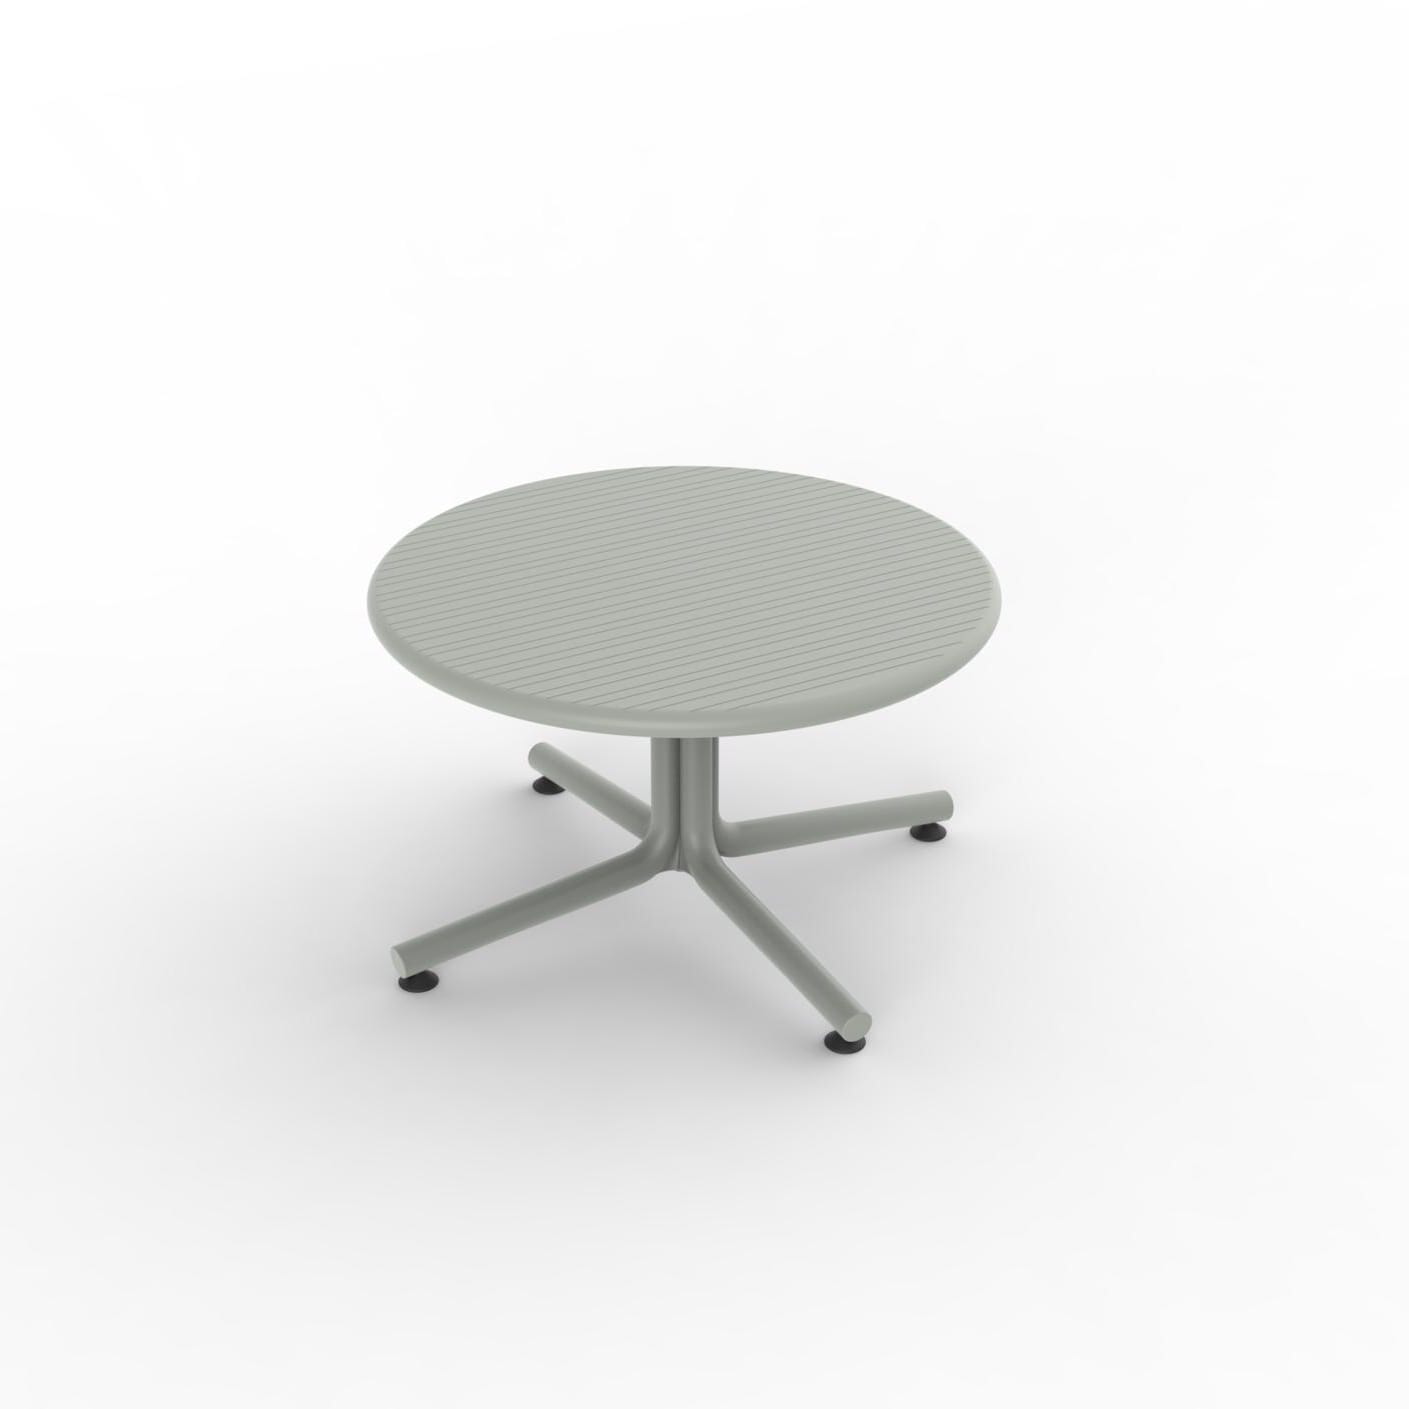 Resol Bini coffee table indoors, outdoor Ø70 greenish gray